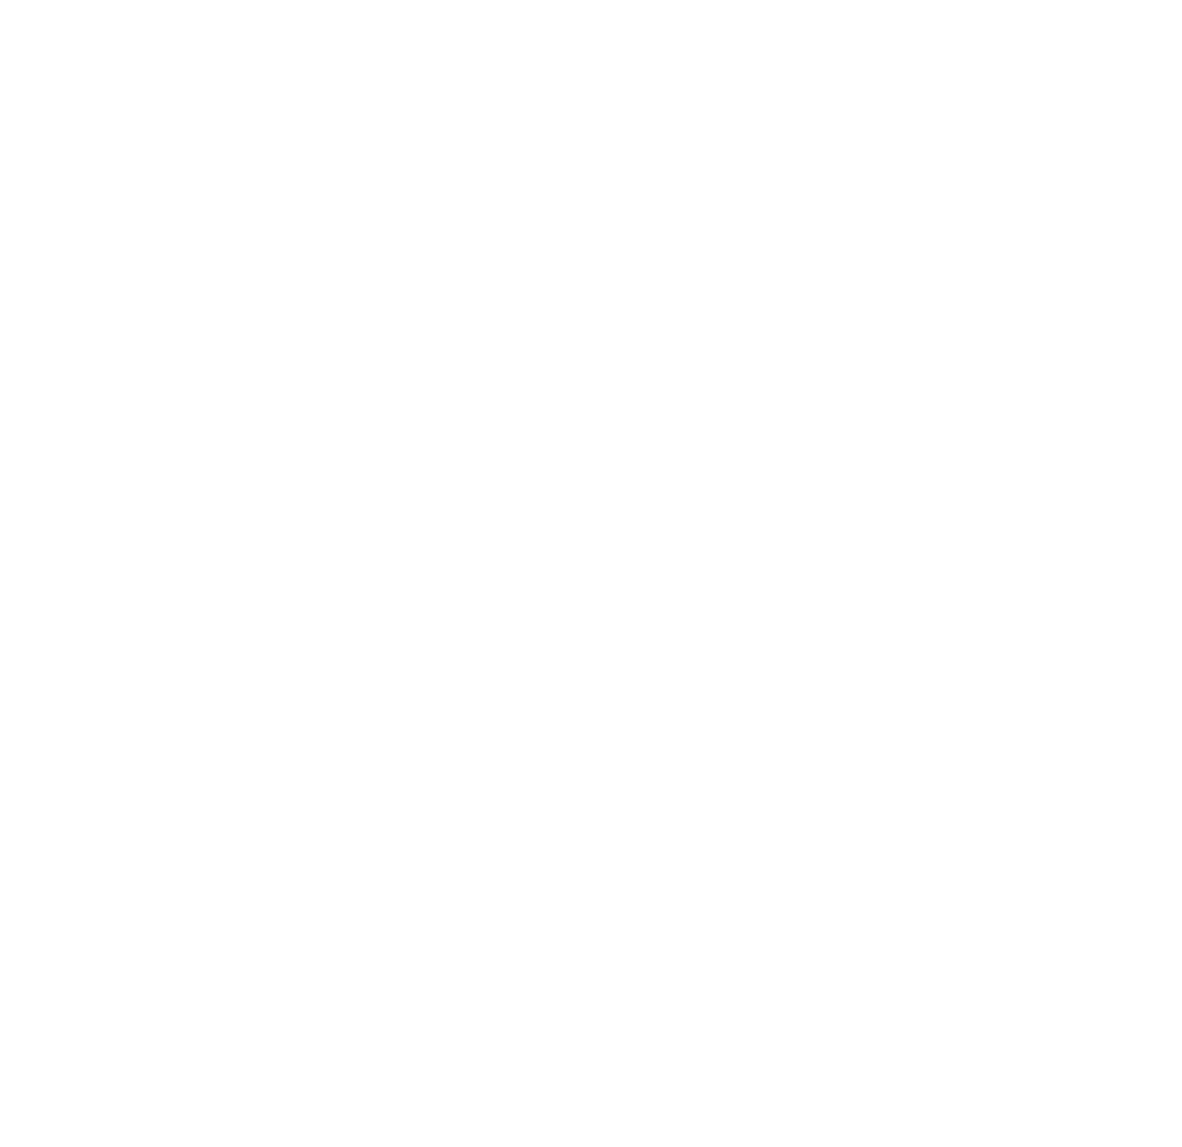 Clinica Dentaria do Bairro